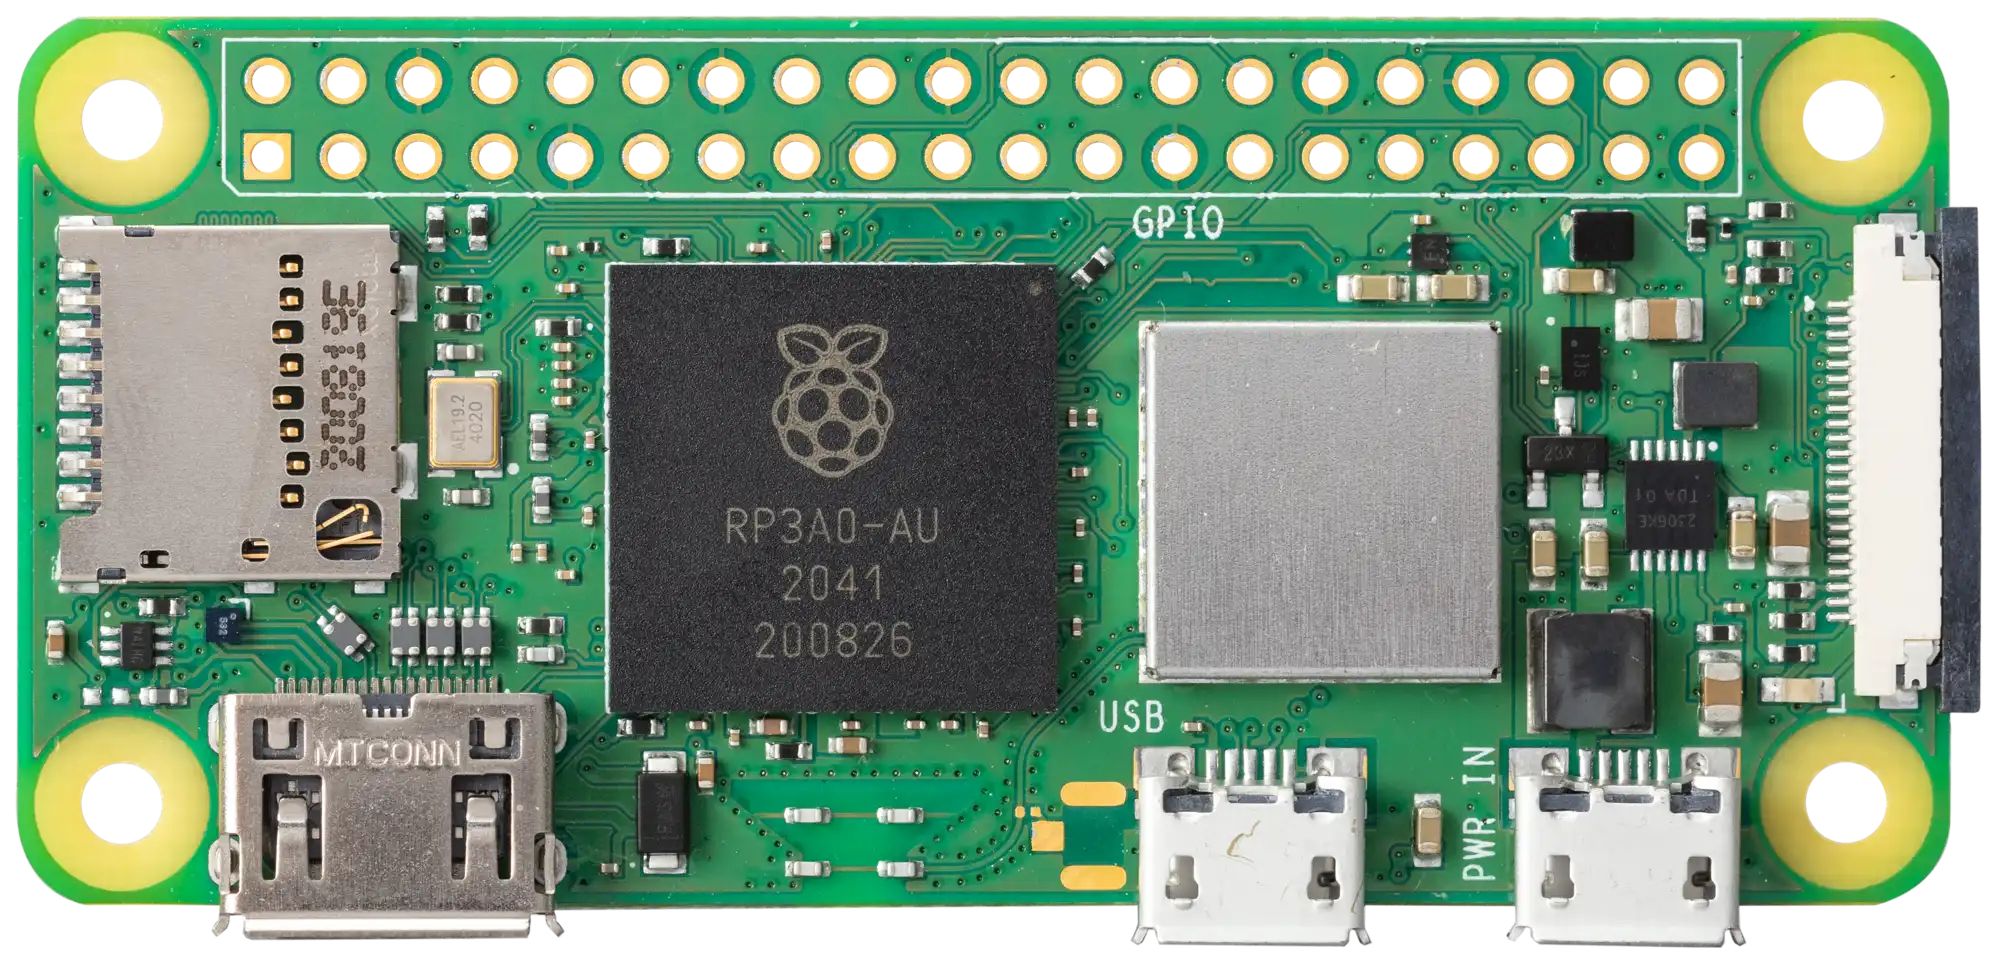 Créer un détecteur de malware par ondes avec un Raspberry Pi, l'incroyable pari (réussi) de chercheurs en sécurité